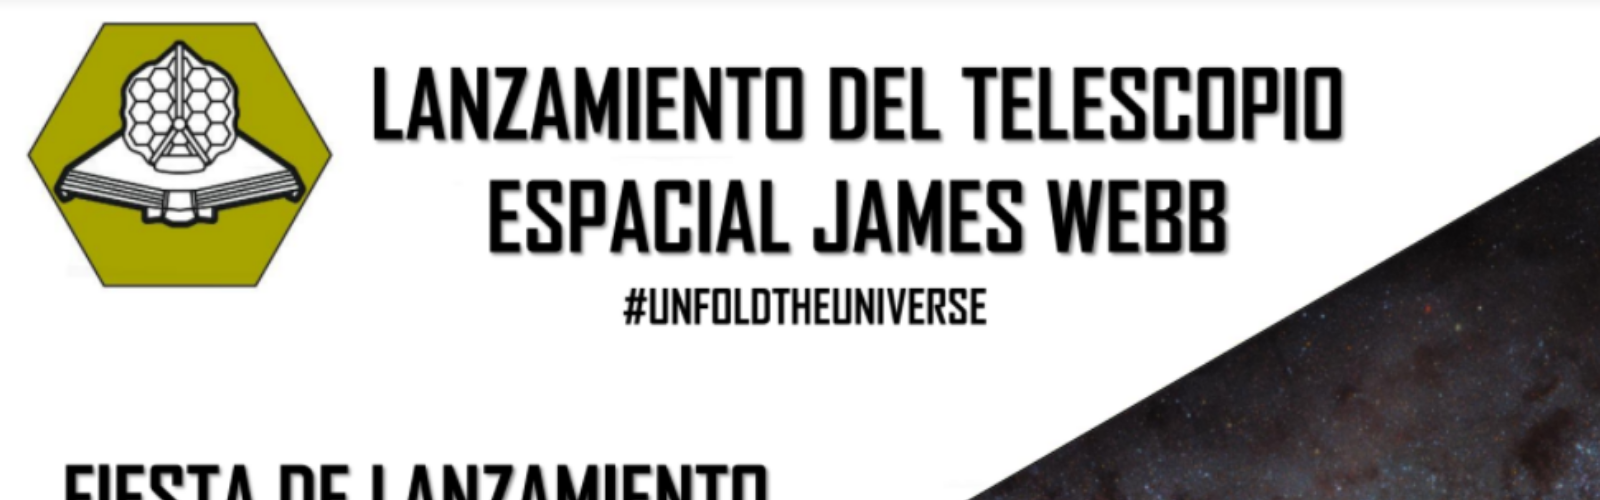 Nota de prensa - Jornada de lanzamiento del telescopio James Webb